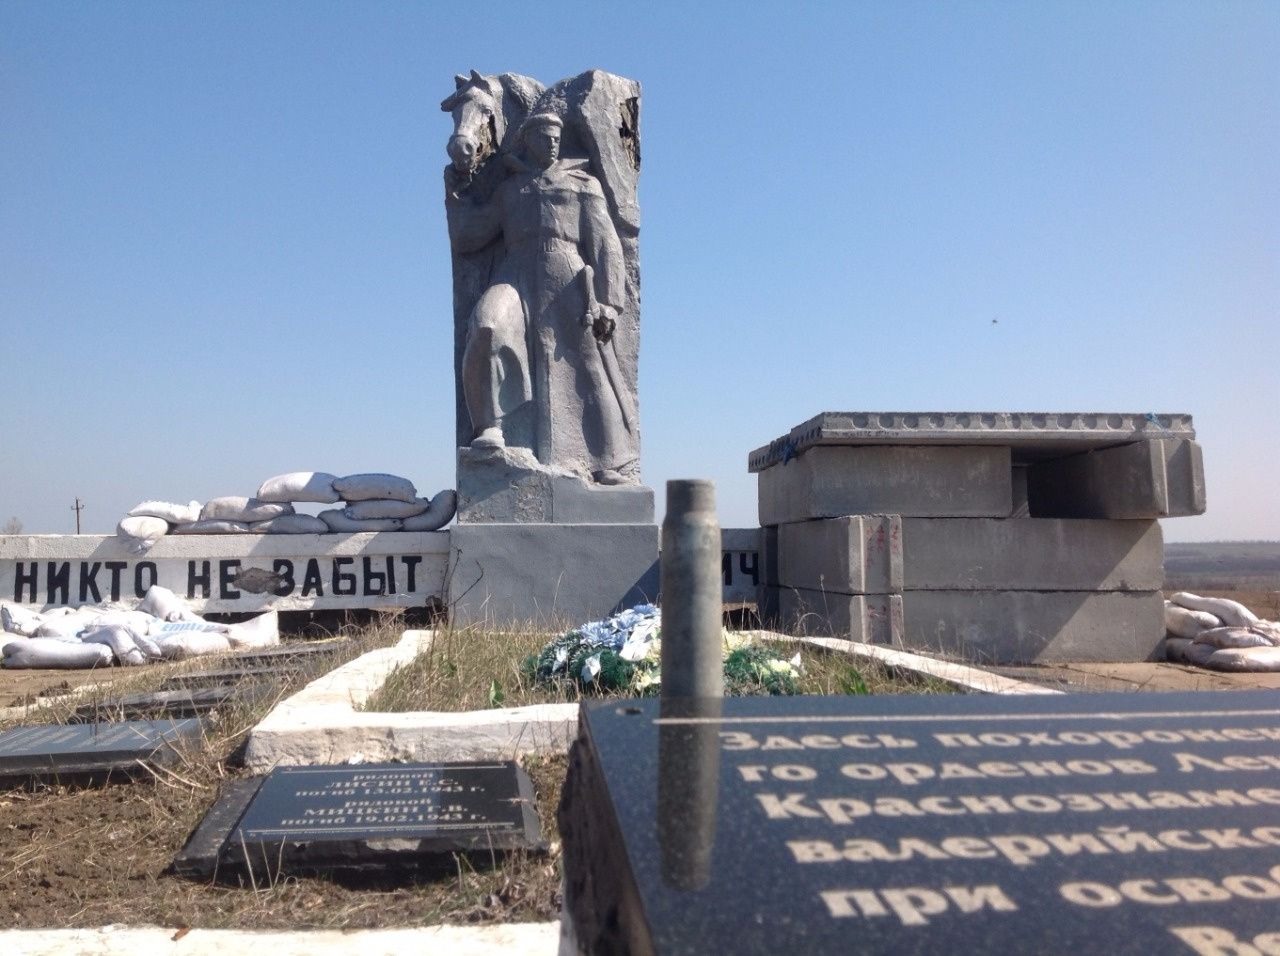 В 2014-2015 годах вблизи памятника размещалась огневая точка ВСУ. Во время боёв памятник пострадал.